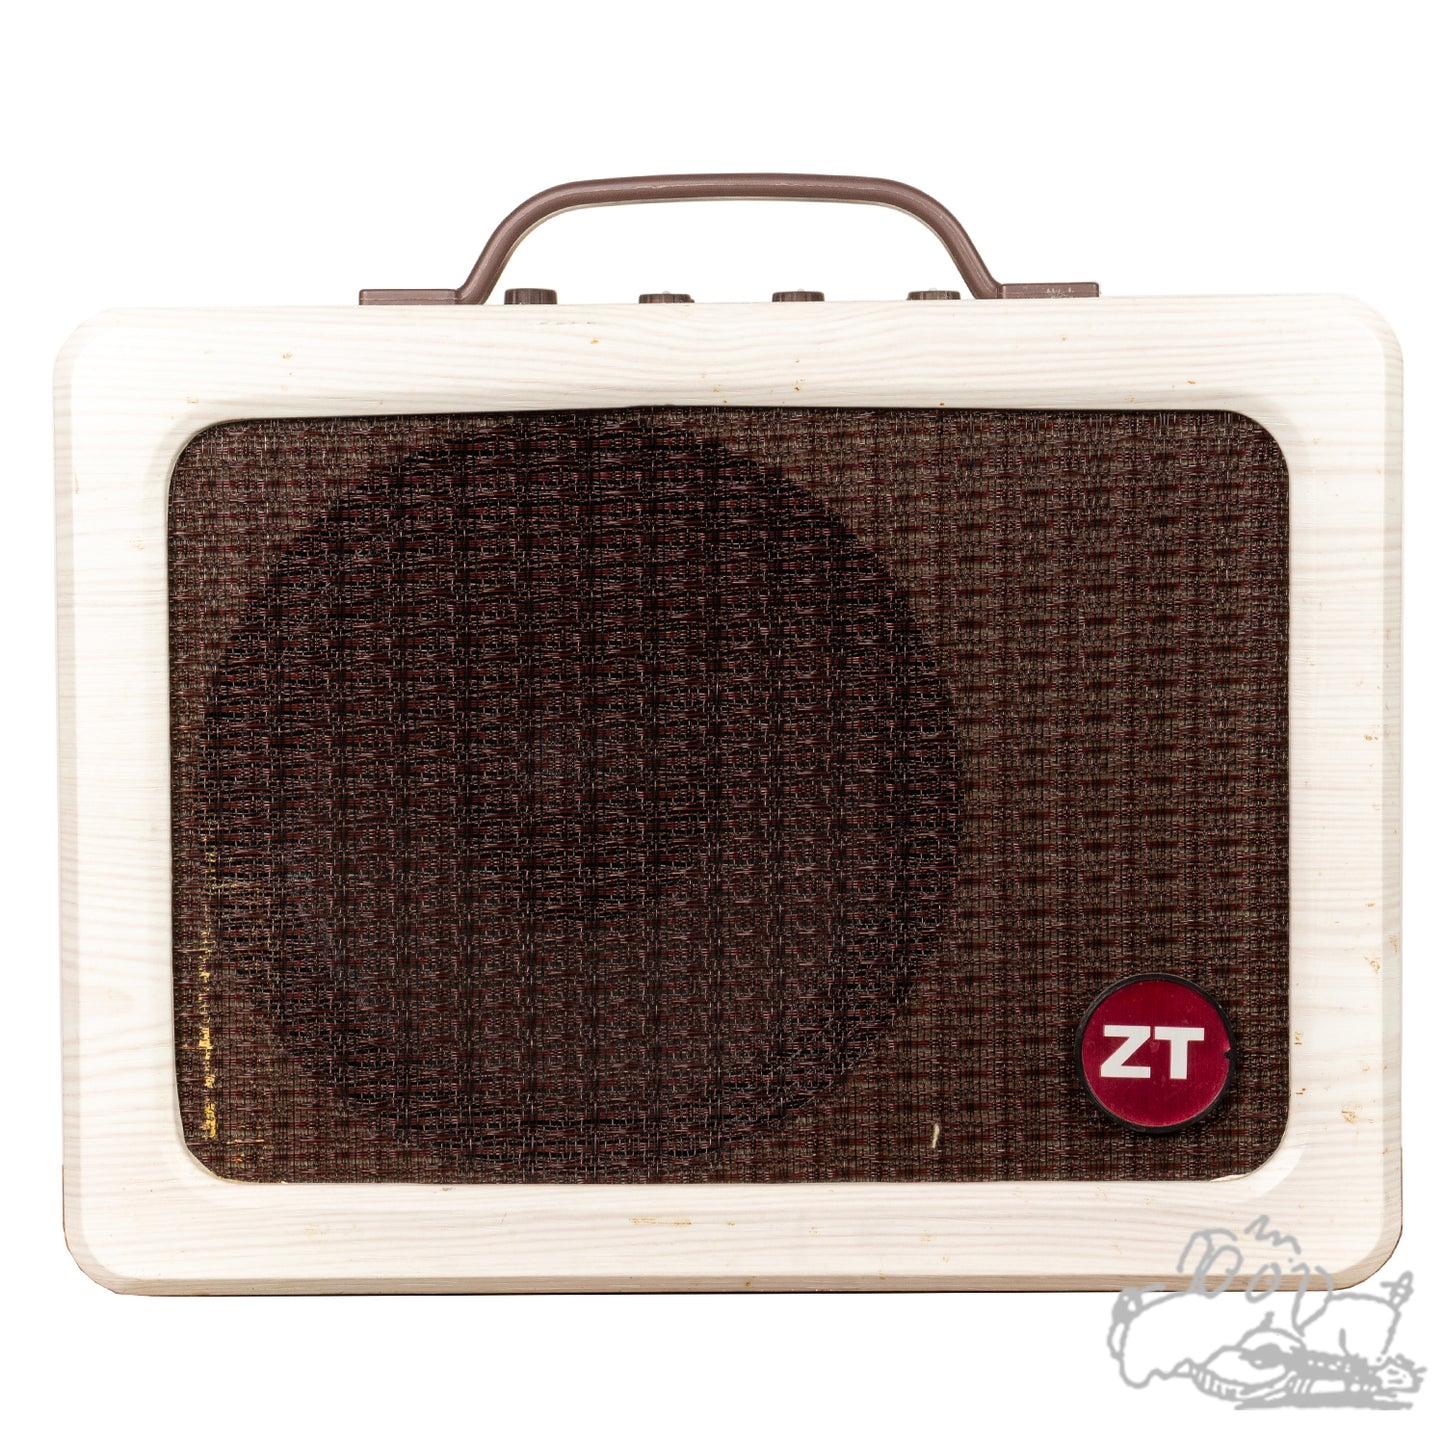 ZT Lunchbox Acoustic Amp - Model LBA1